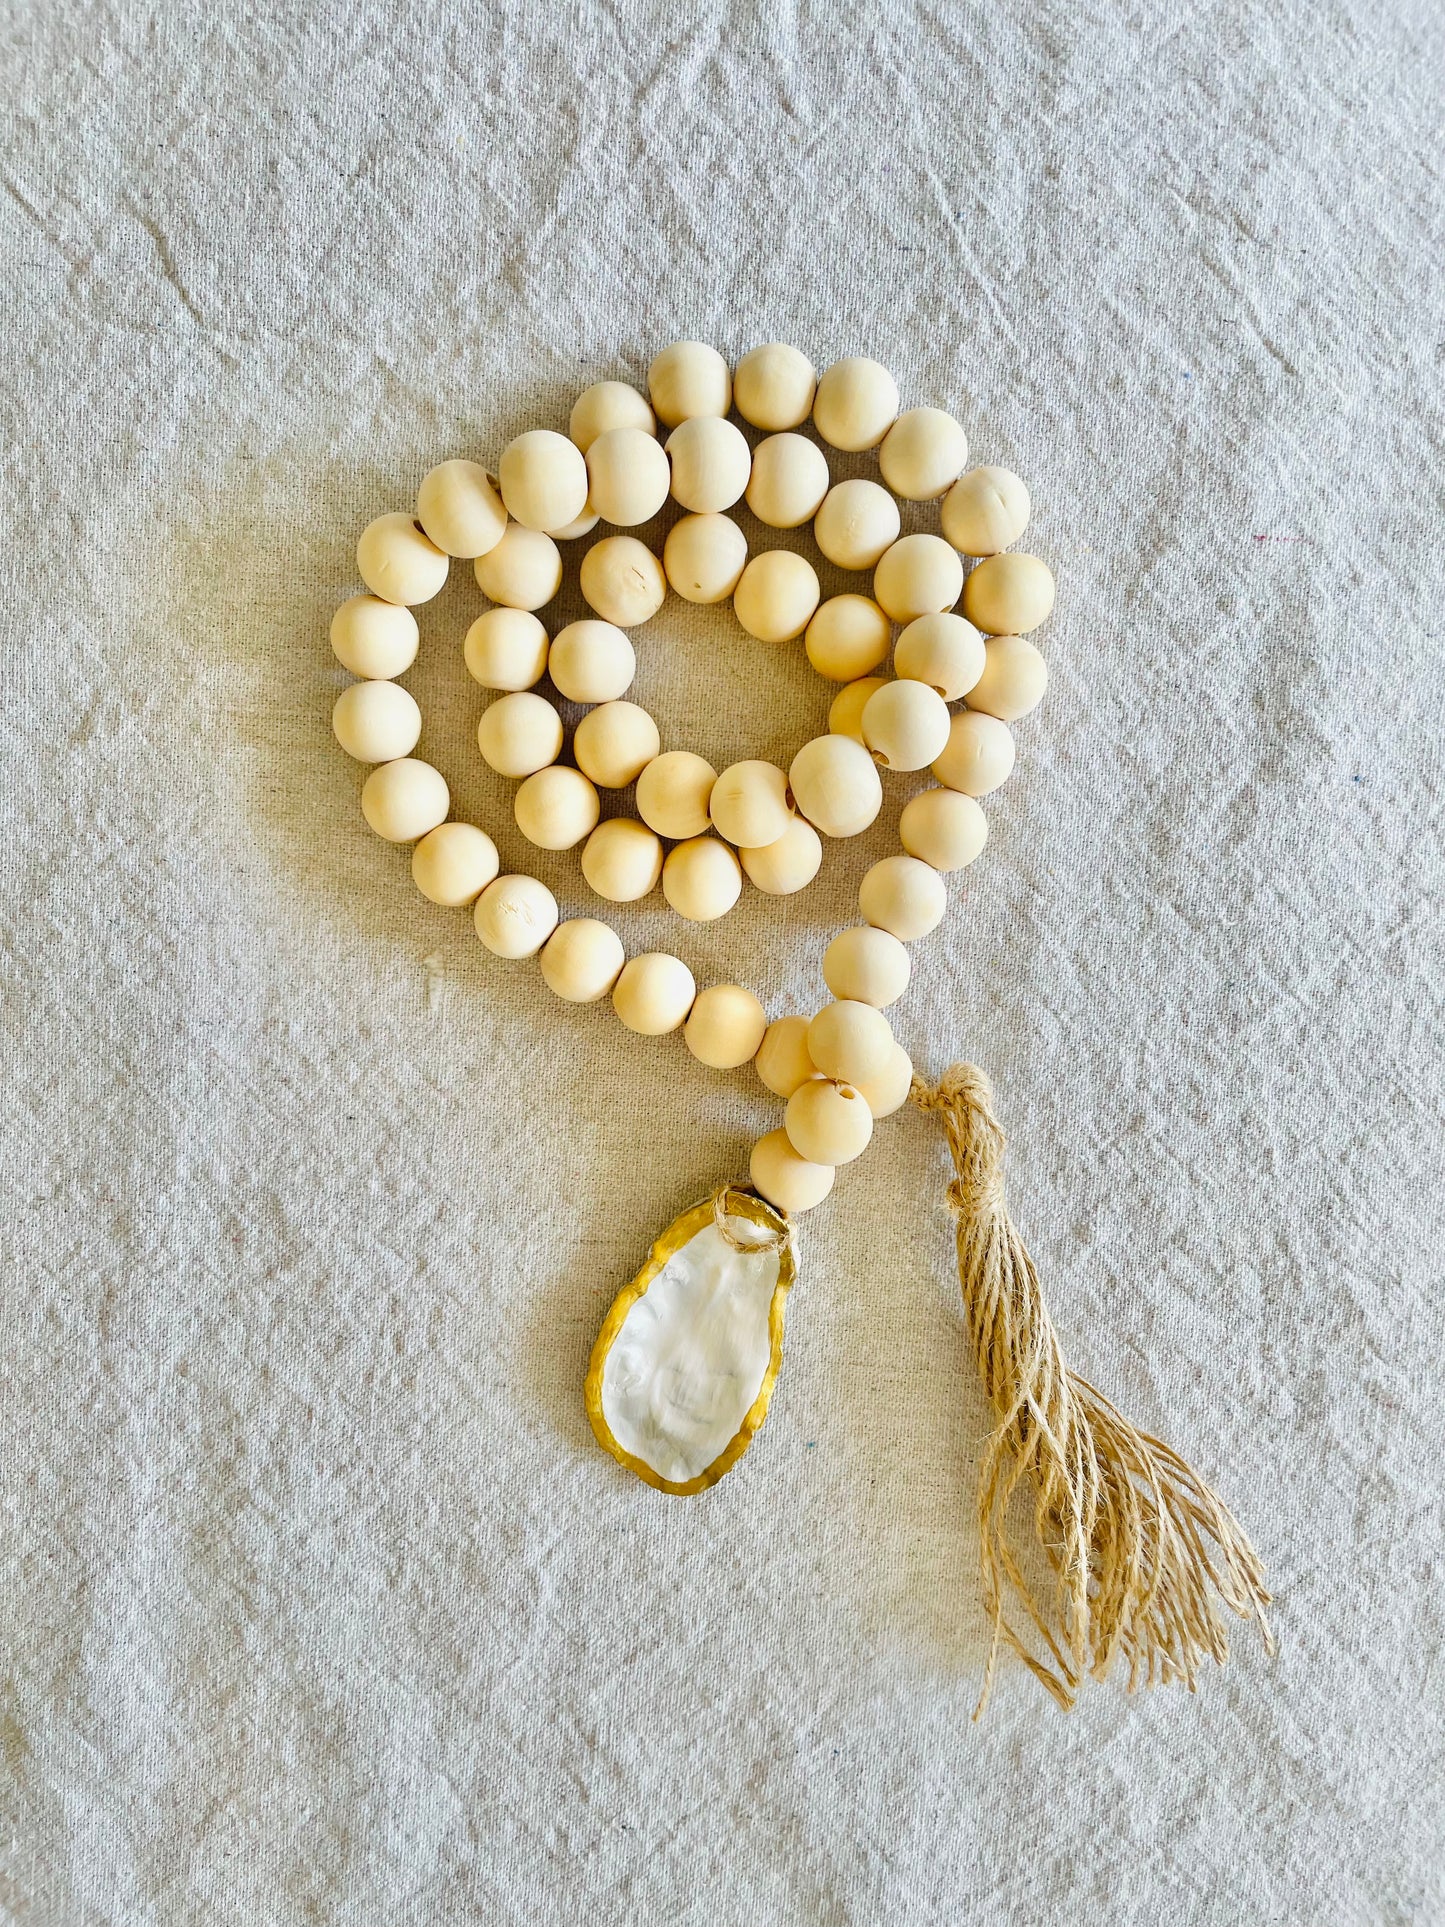 CUSTOM ORDER: Oyster Blessing Beads